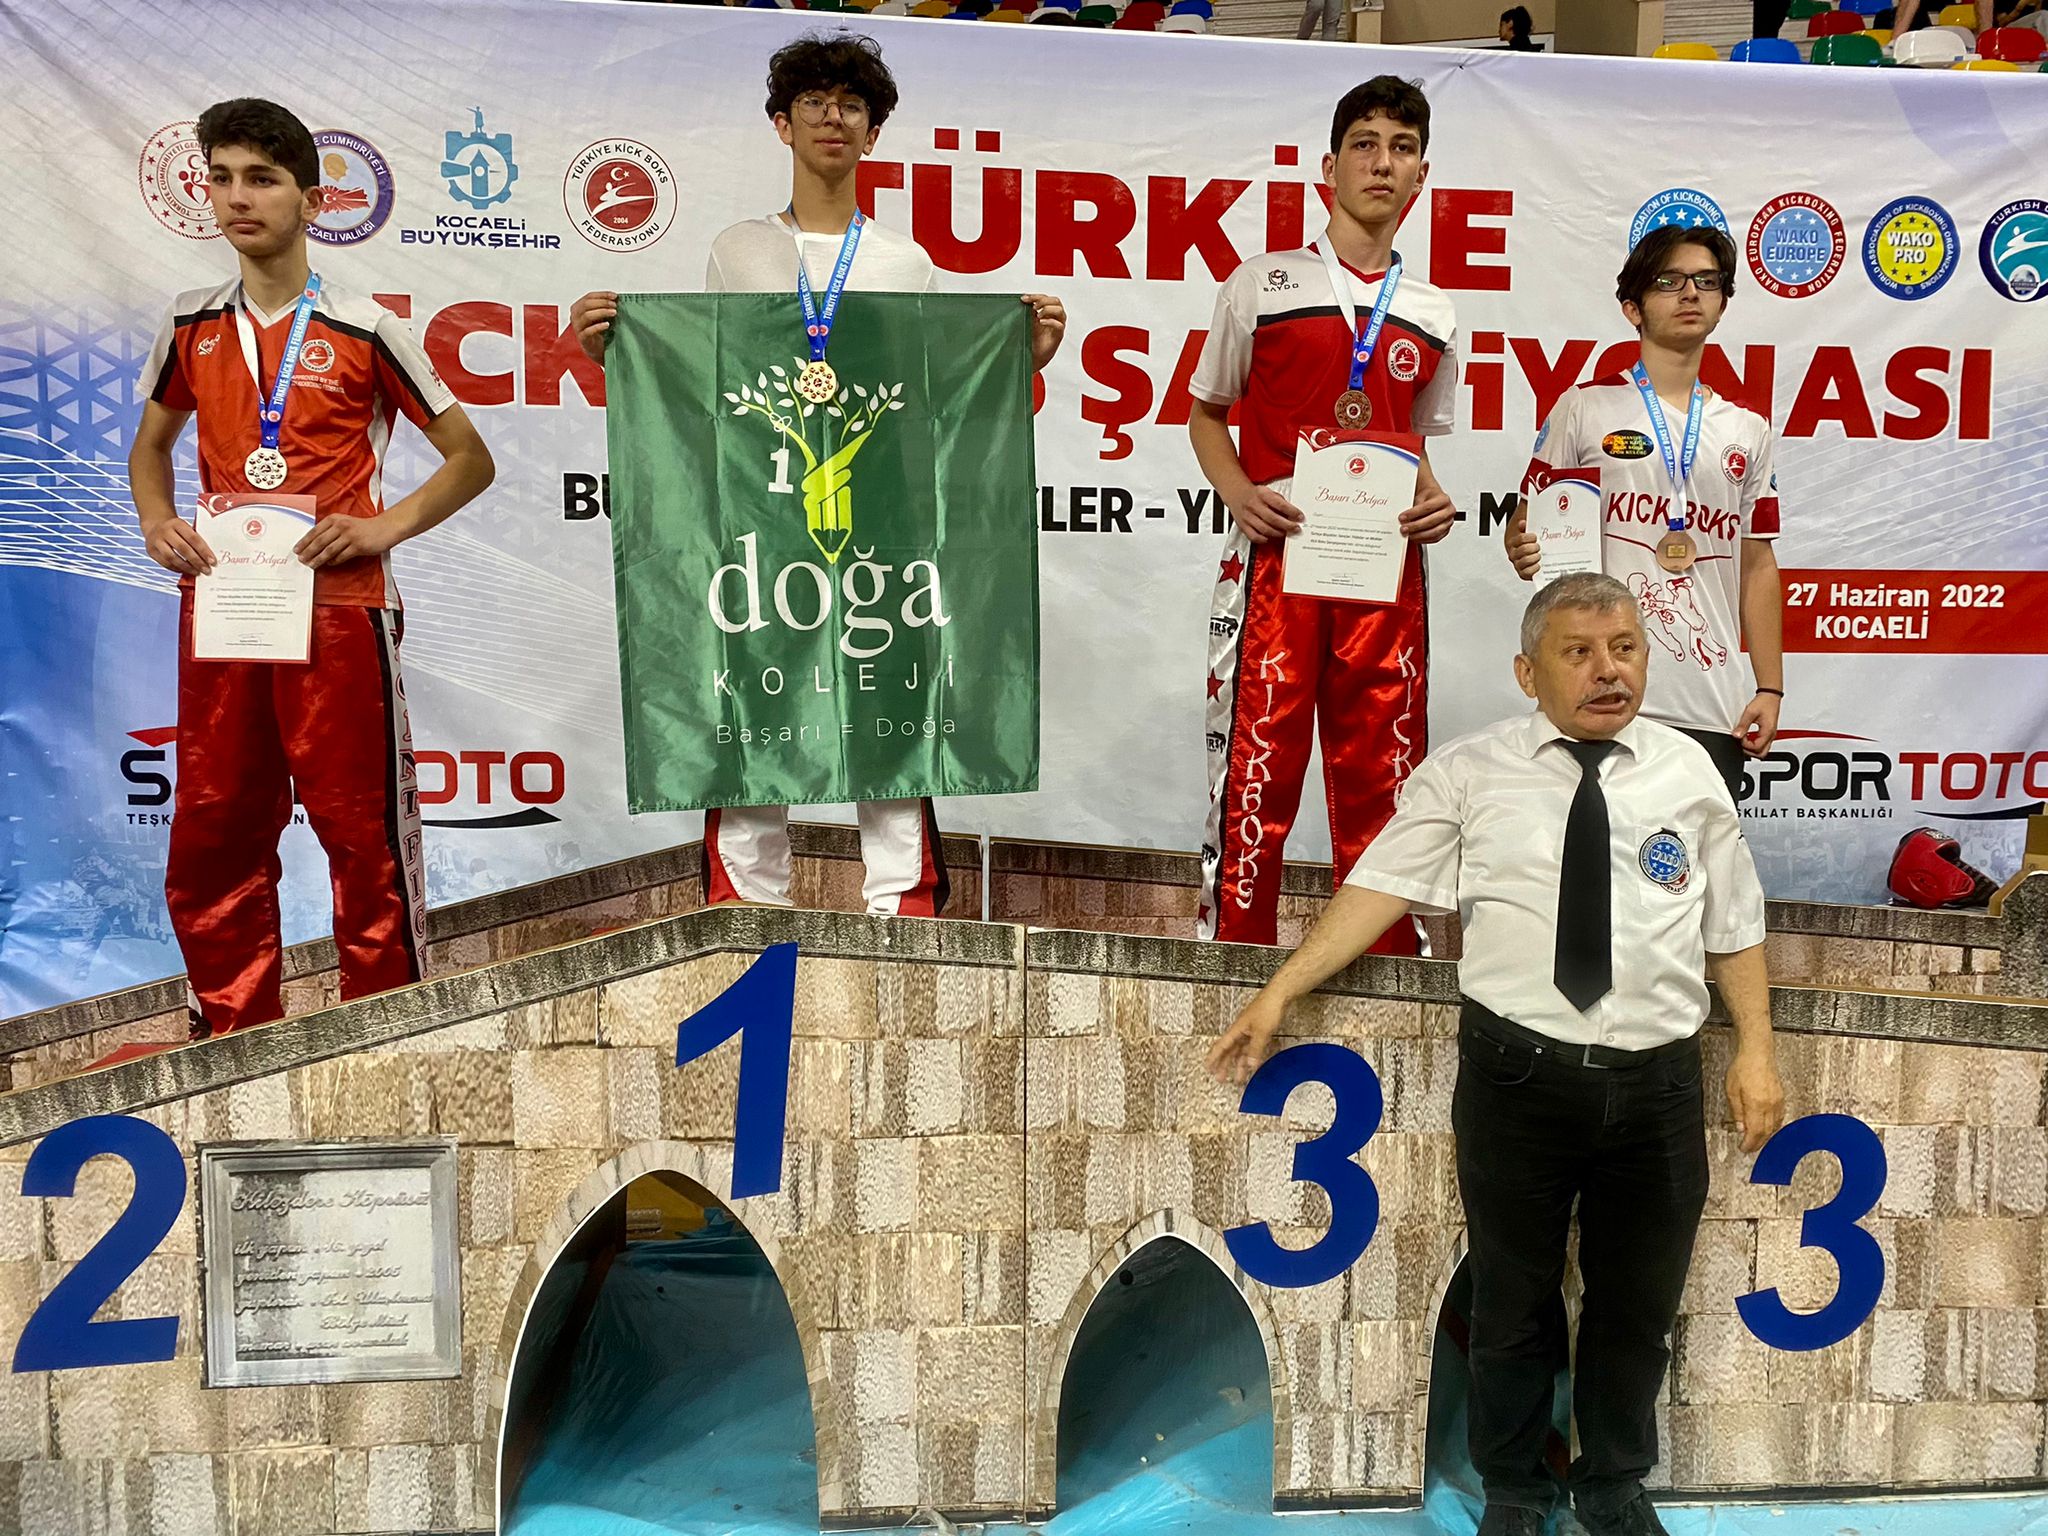 Ahmet Kaan Karaman’dan 8. Türkiye Şampiyonluğu